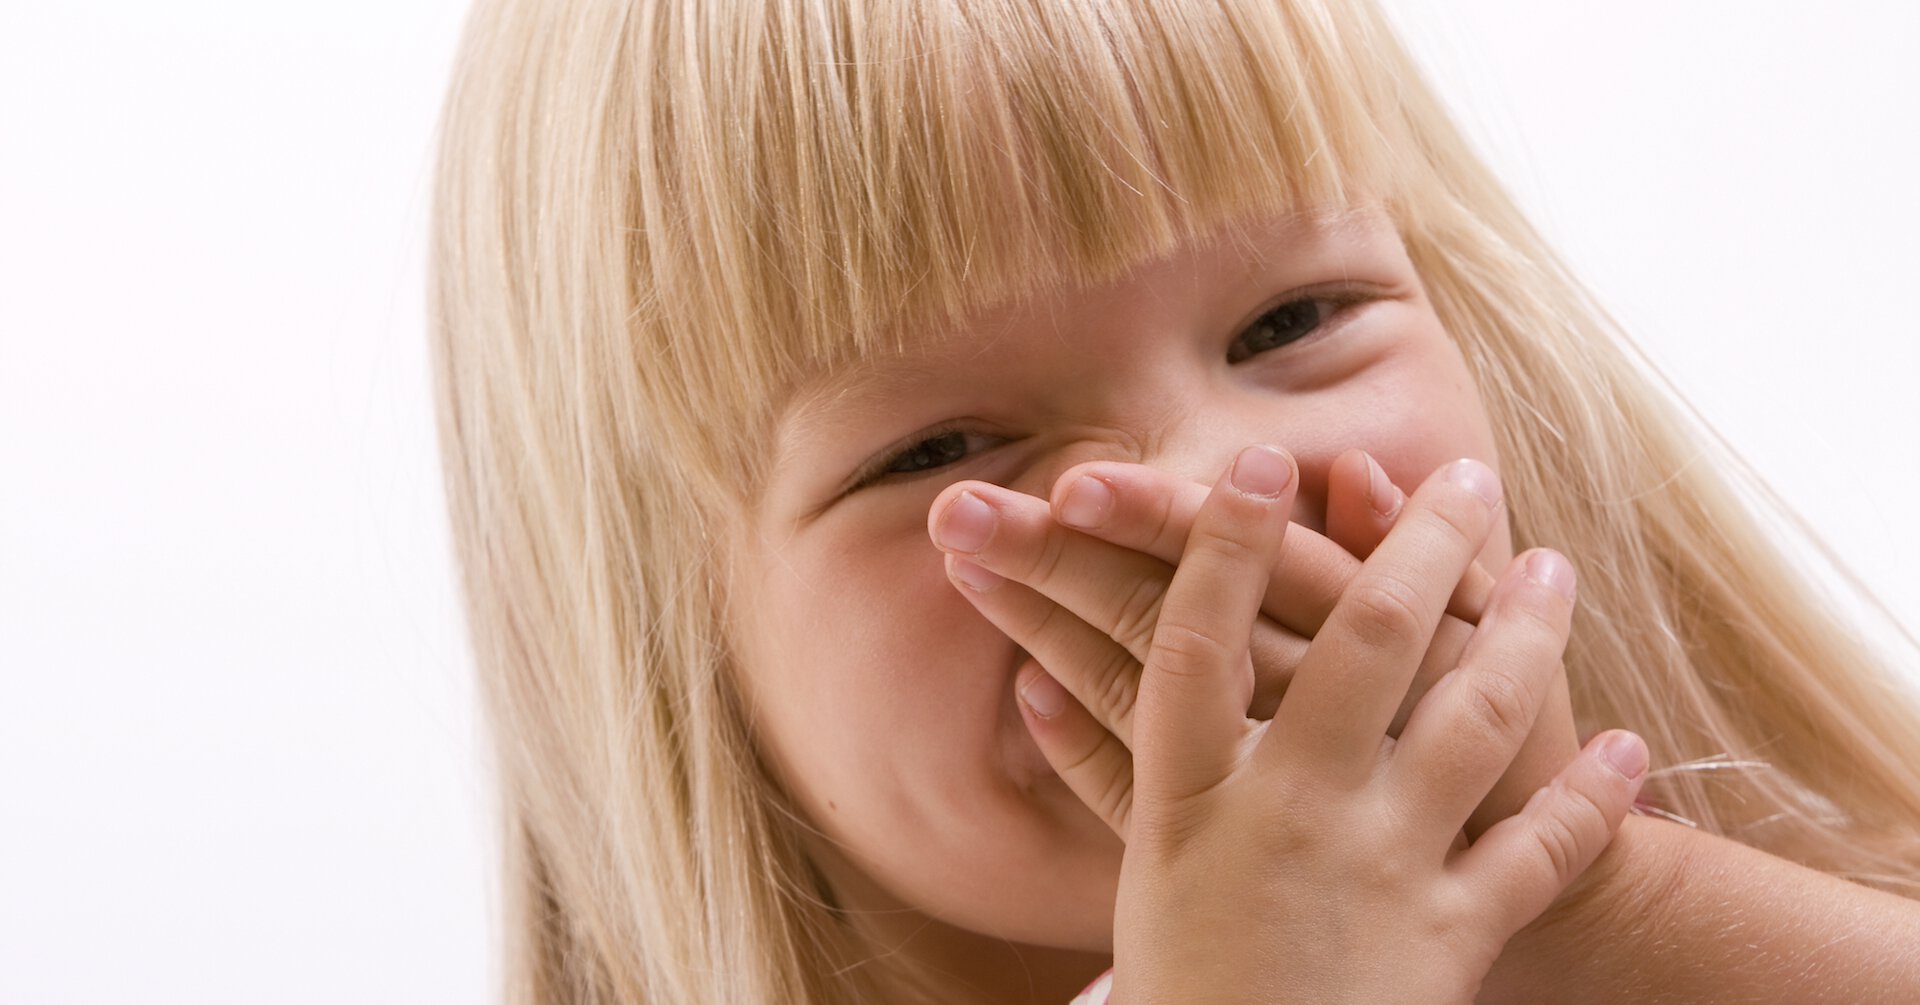 Запах изо рта ребенка форумы. Ребенок с закрытым ртом. Ребенок закрывает рот. Детям о неприятных запахах.